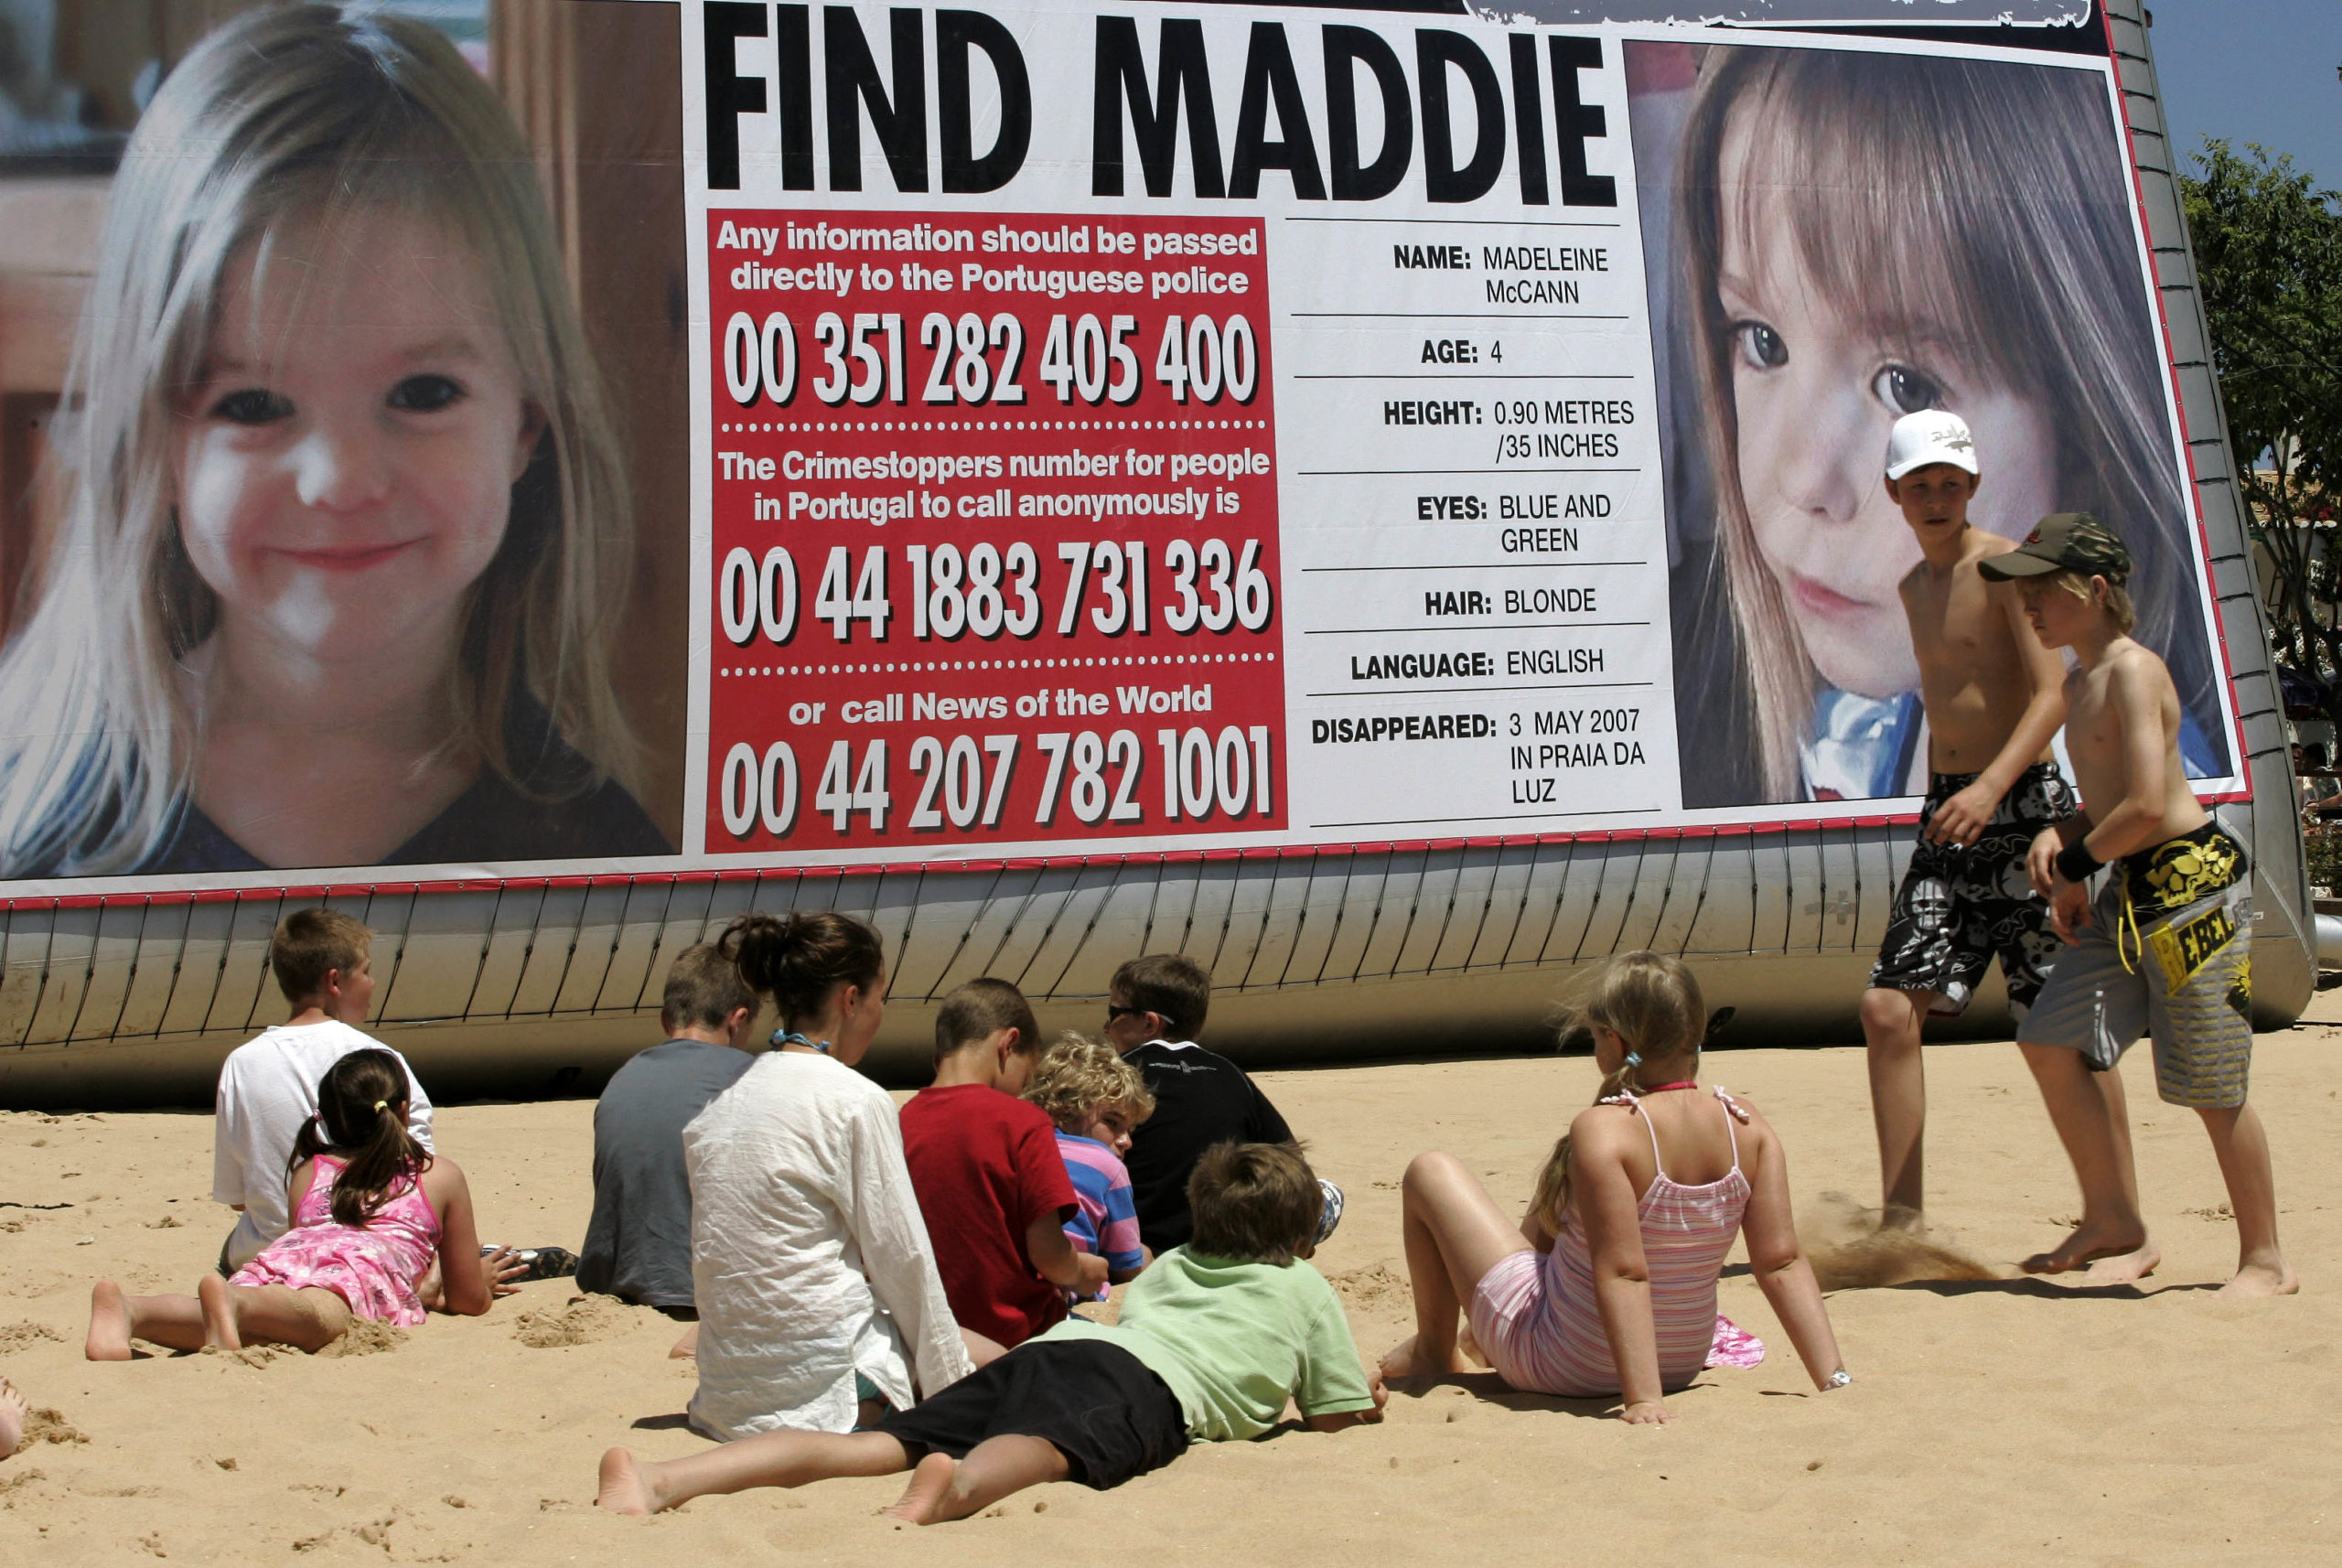 Affaire Maddie: Le procureur allemand s'intéresse à un viol commis dans la même région du Portugal